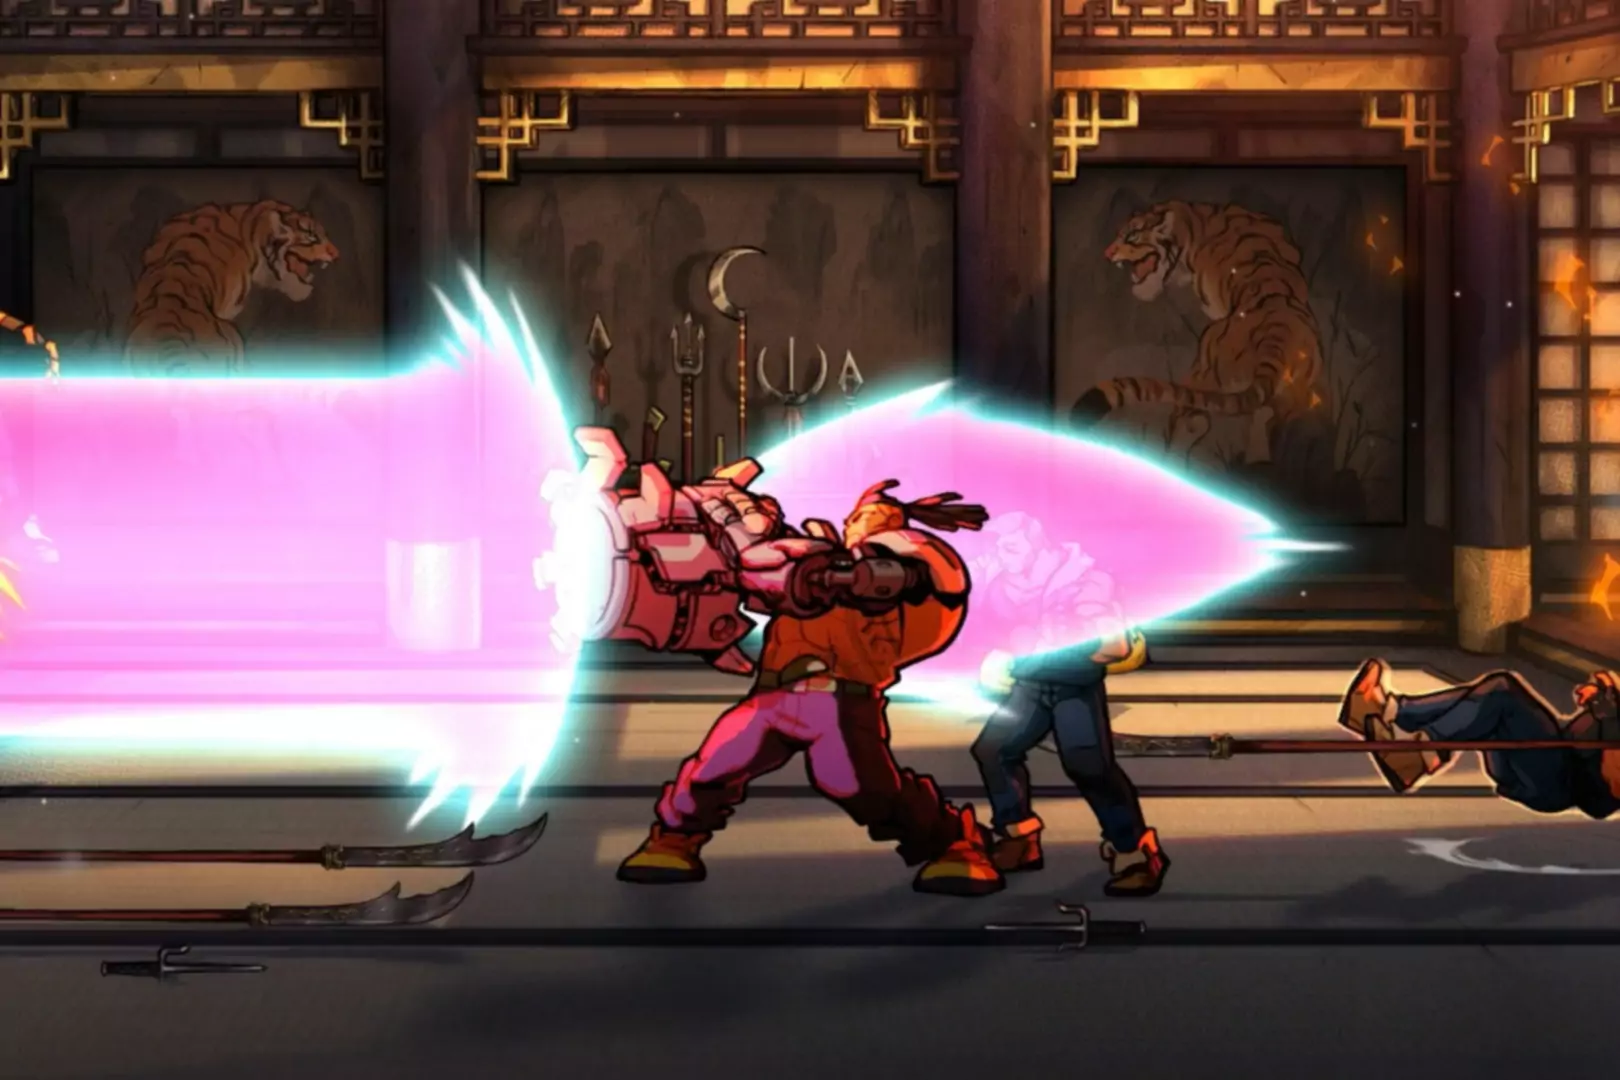 Streets of Rage 4'ün ellerinden pembe patlamalar çıkaran karakteri içeren ekran görüntüsü